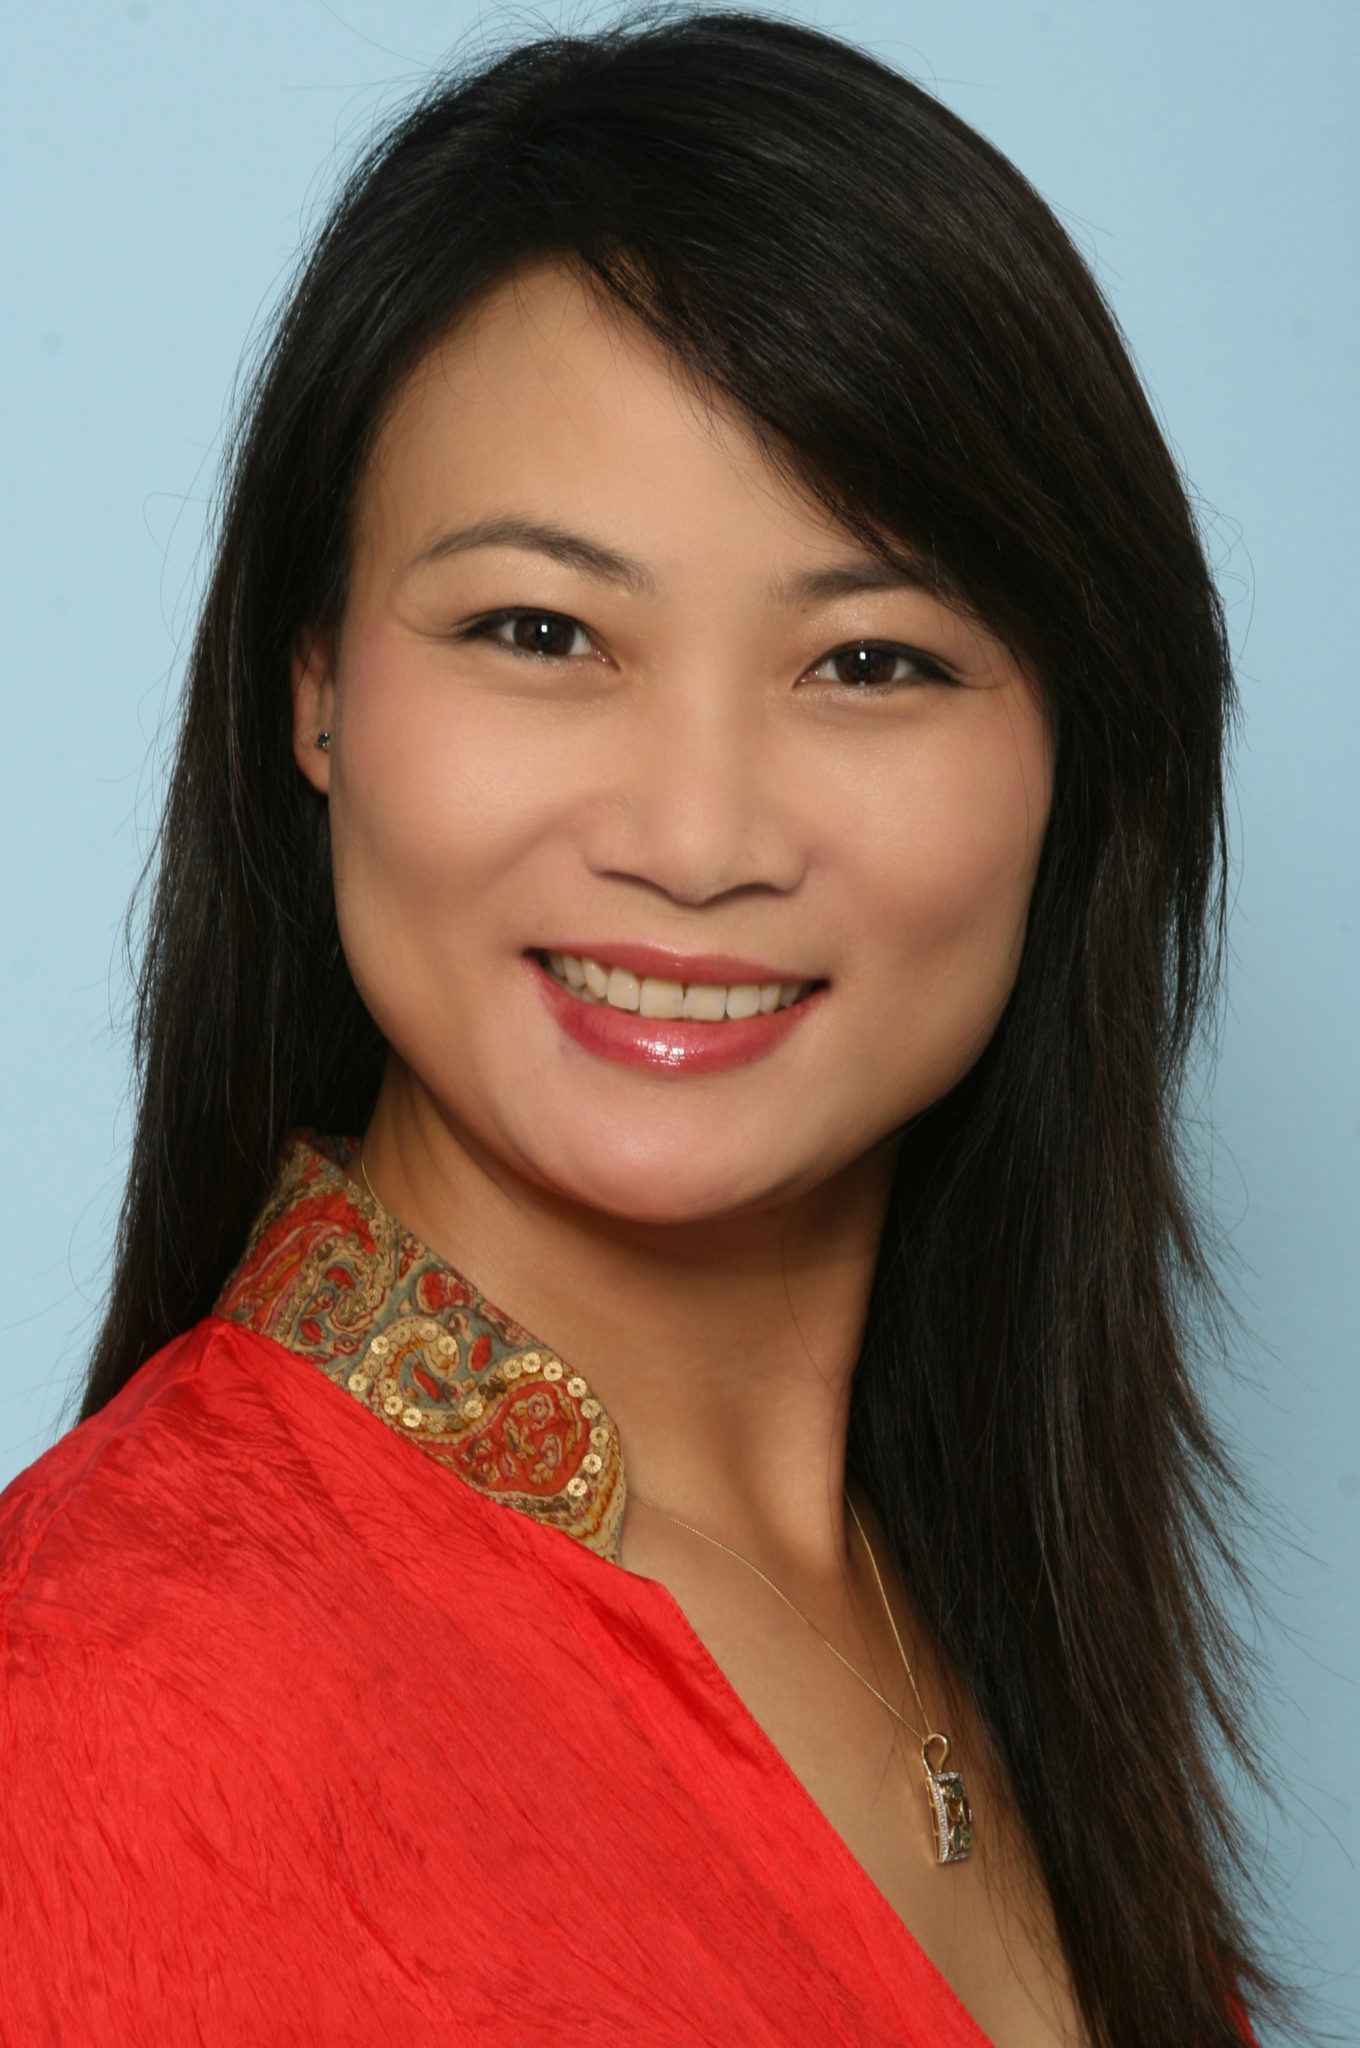 Jia Chen